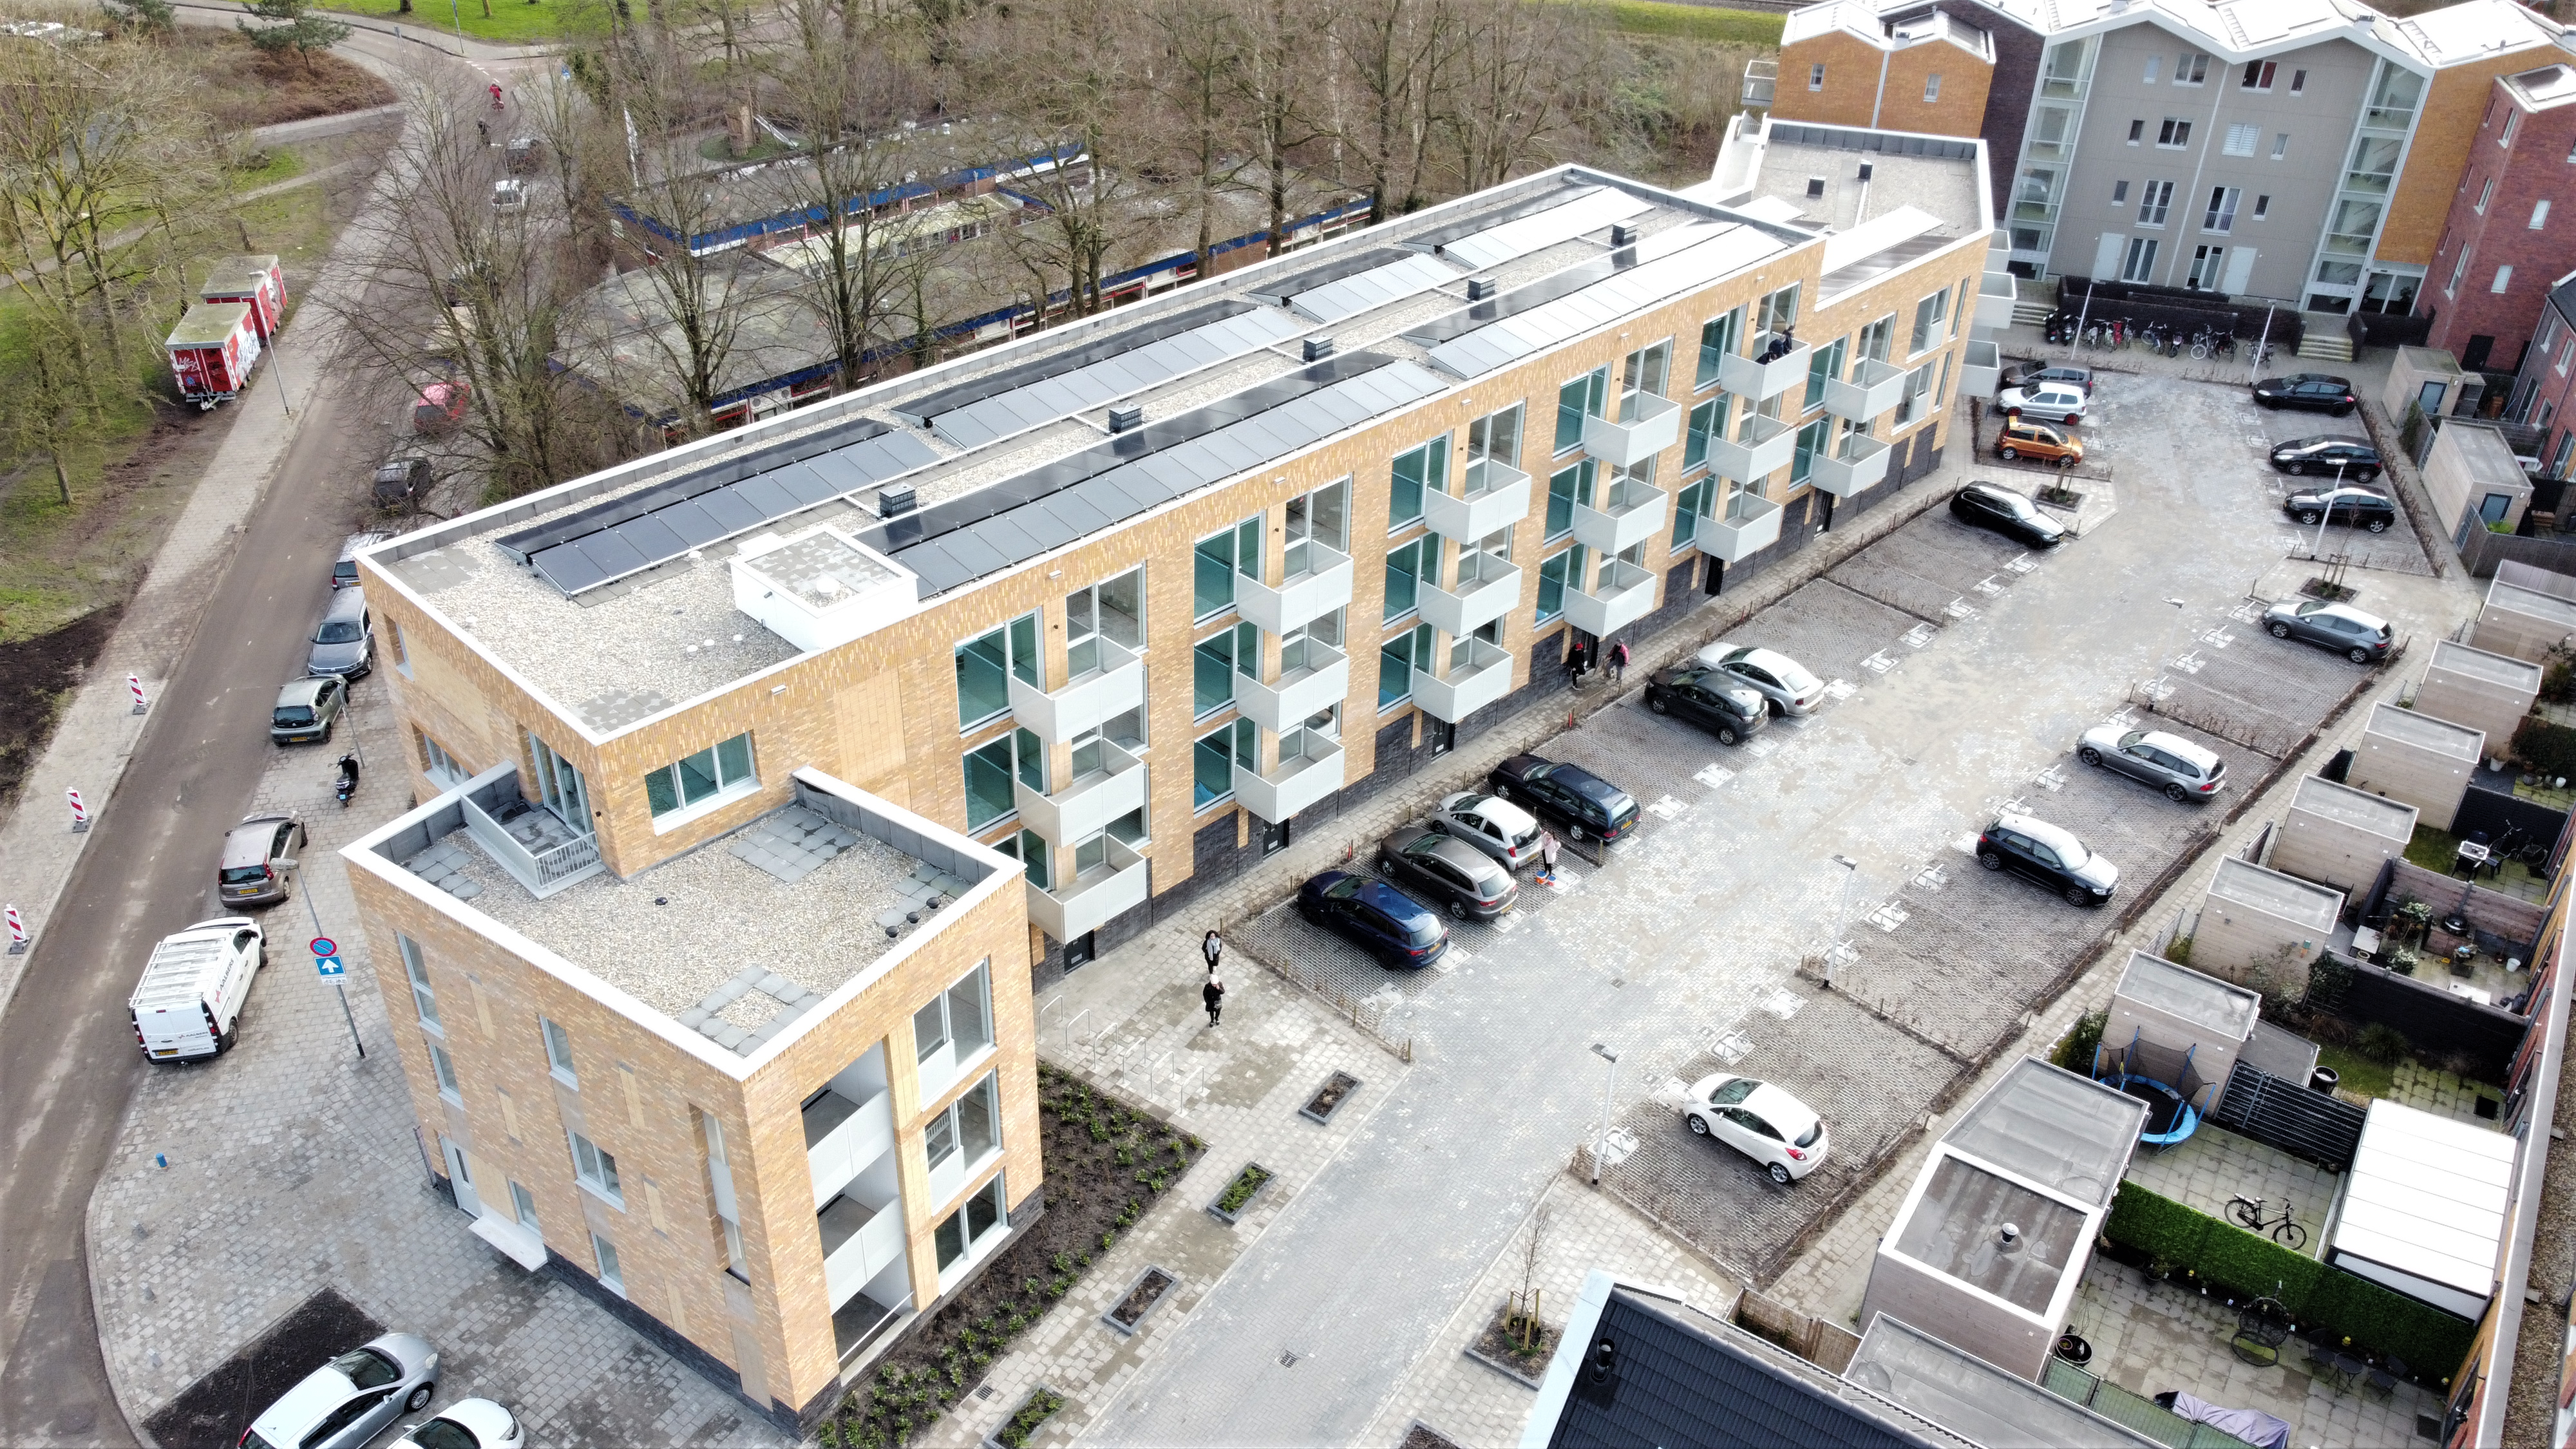 Nieuwbouw locatie vrouwenopvang Groningen